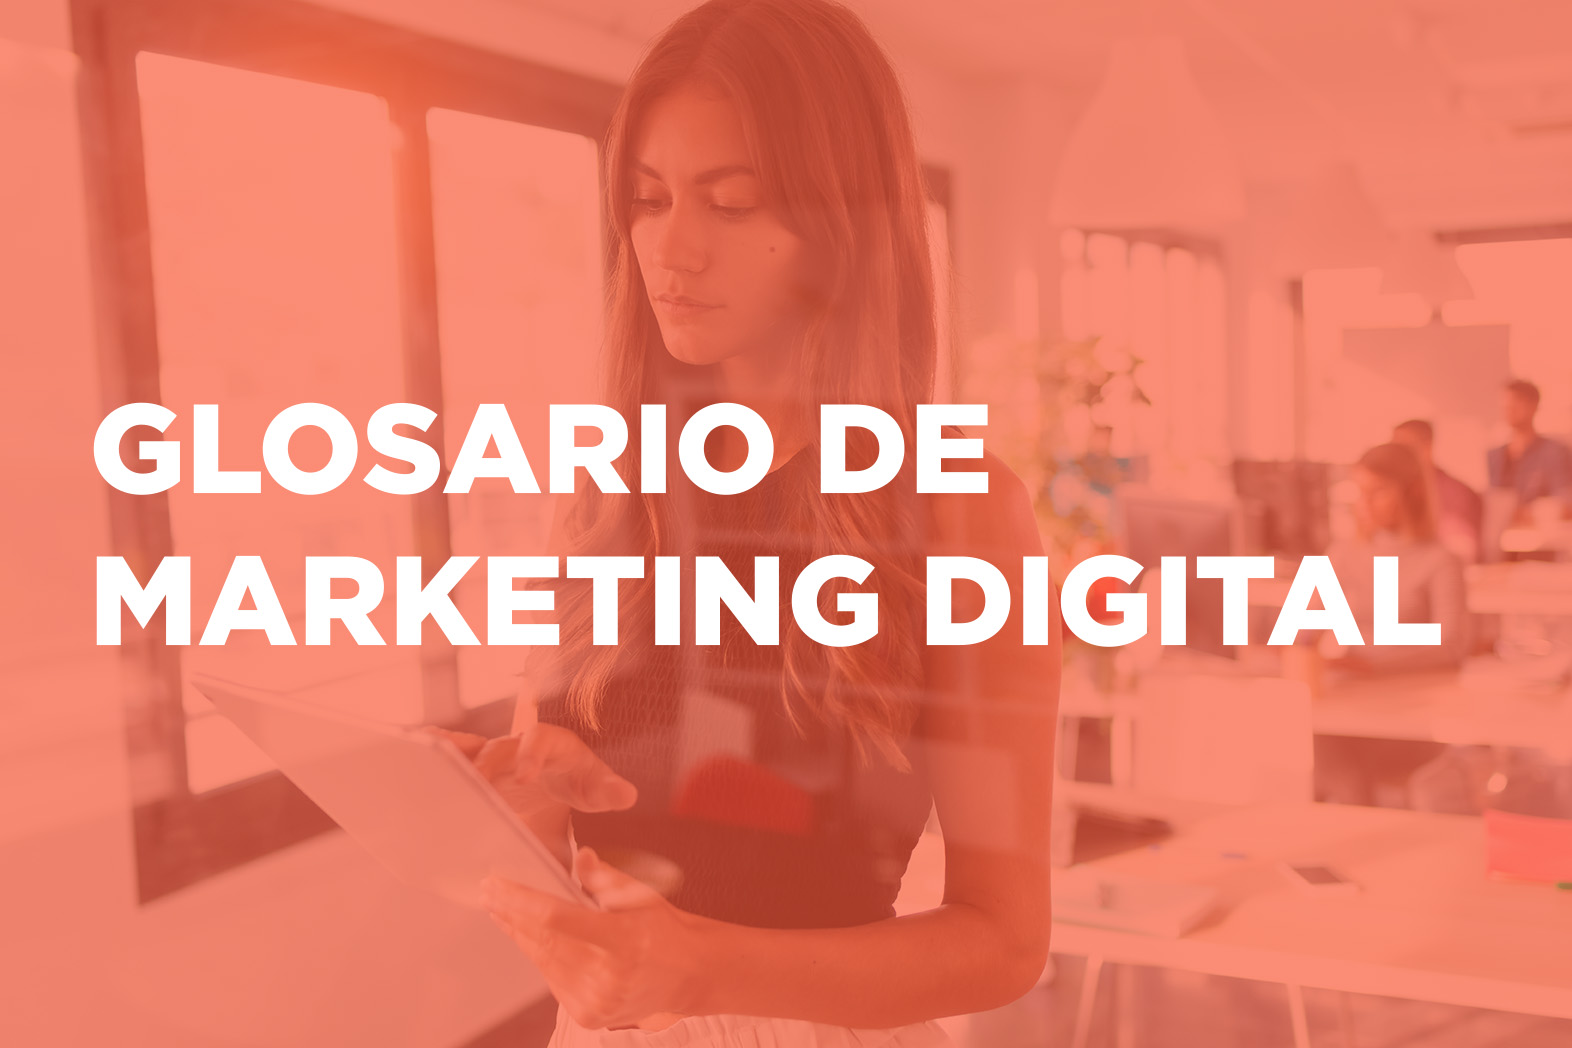 glosario de marketing digital - Glosario de marketing digital terminos de marketing digital - Glosario de Marketing Digital